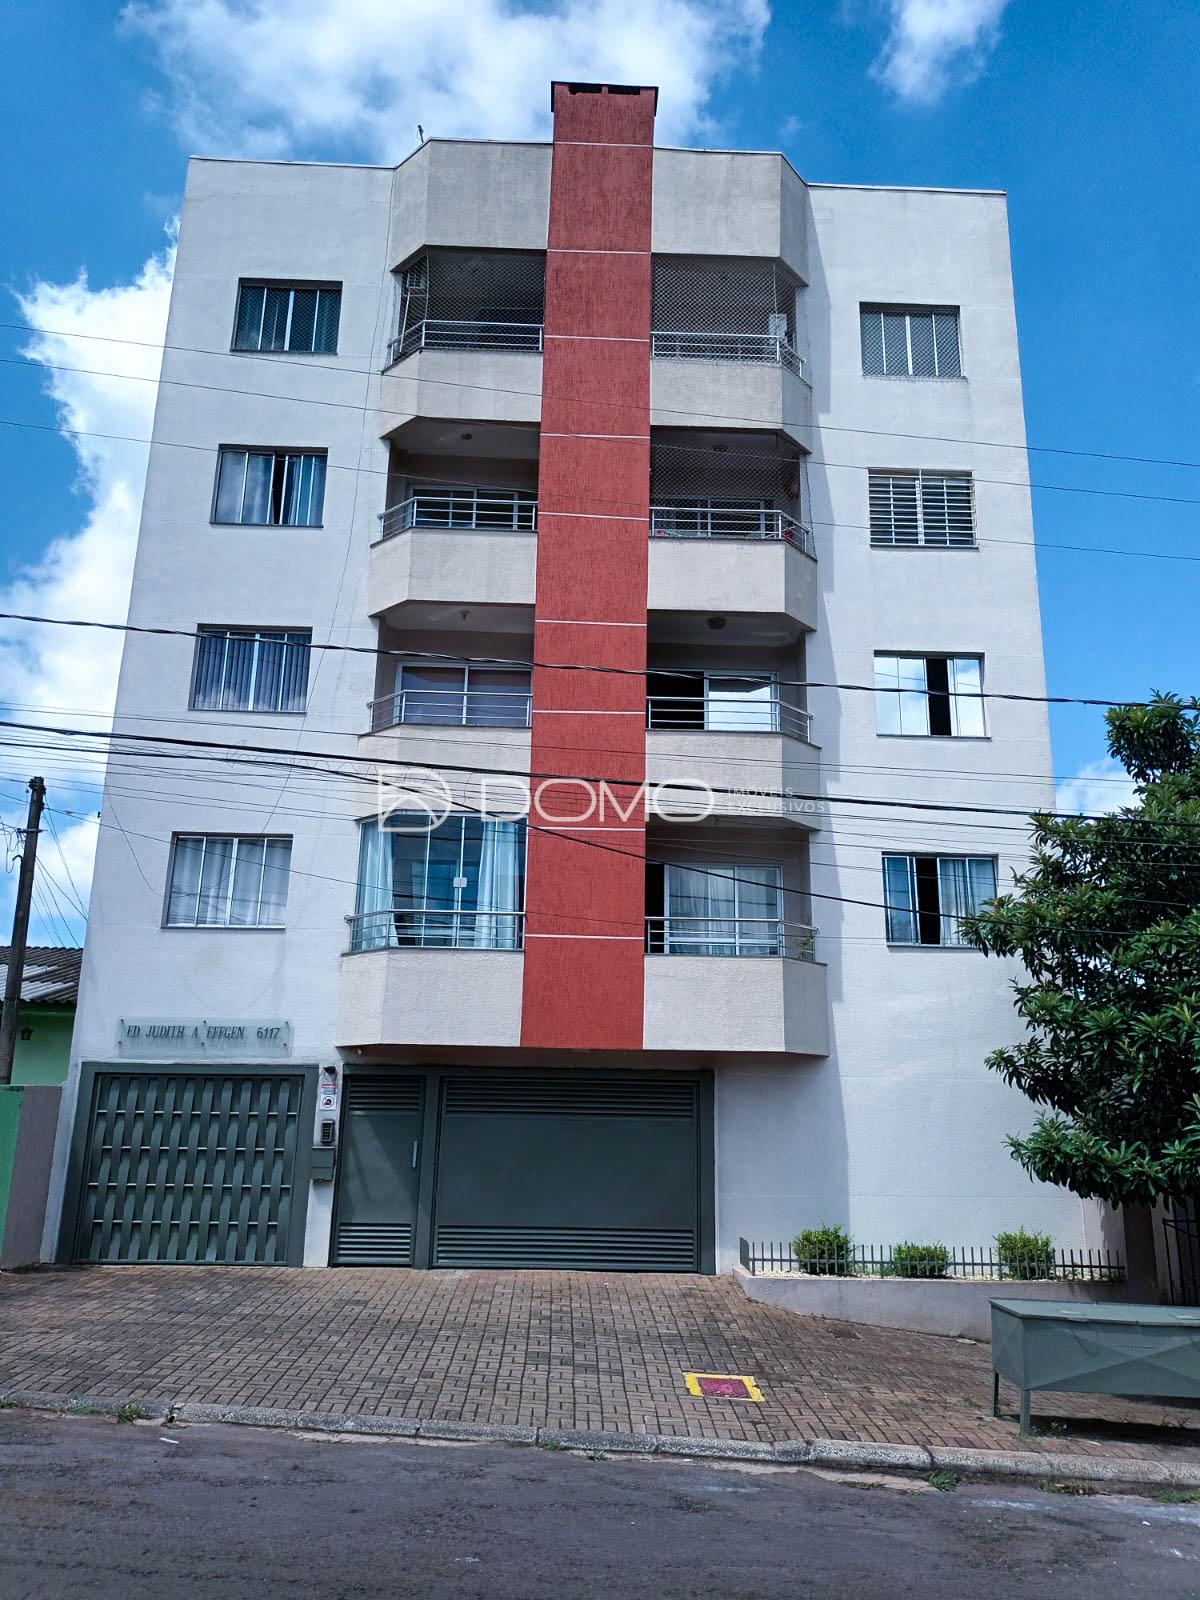 Apartamento com 2 dormitórios à venda,91.58 m , Coqueiral, CAS...